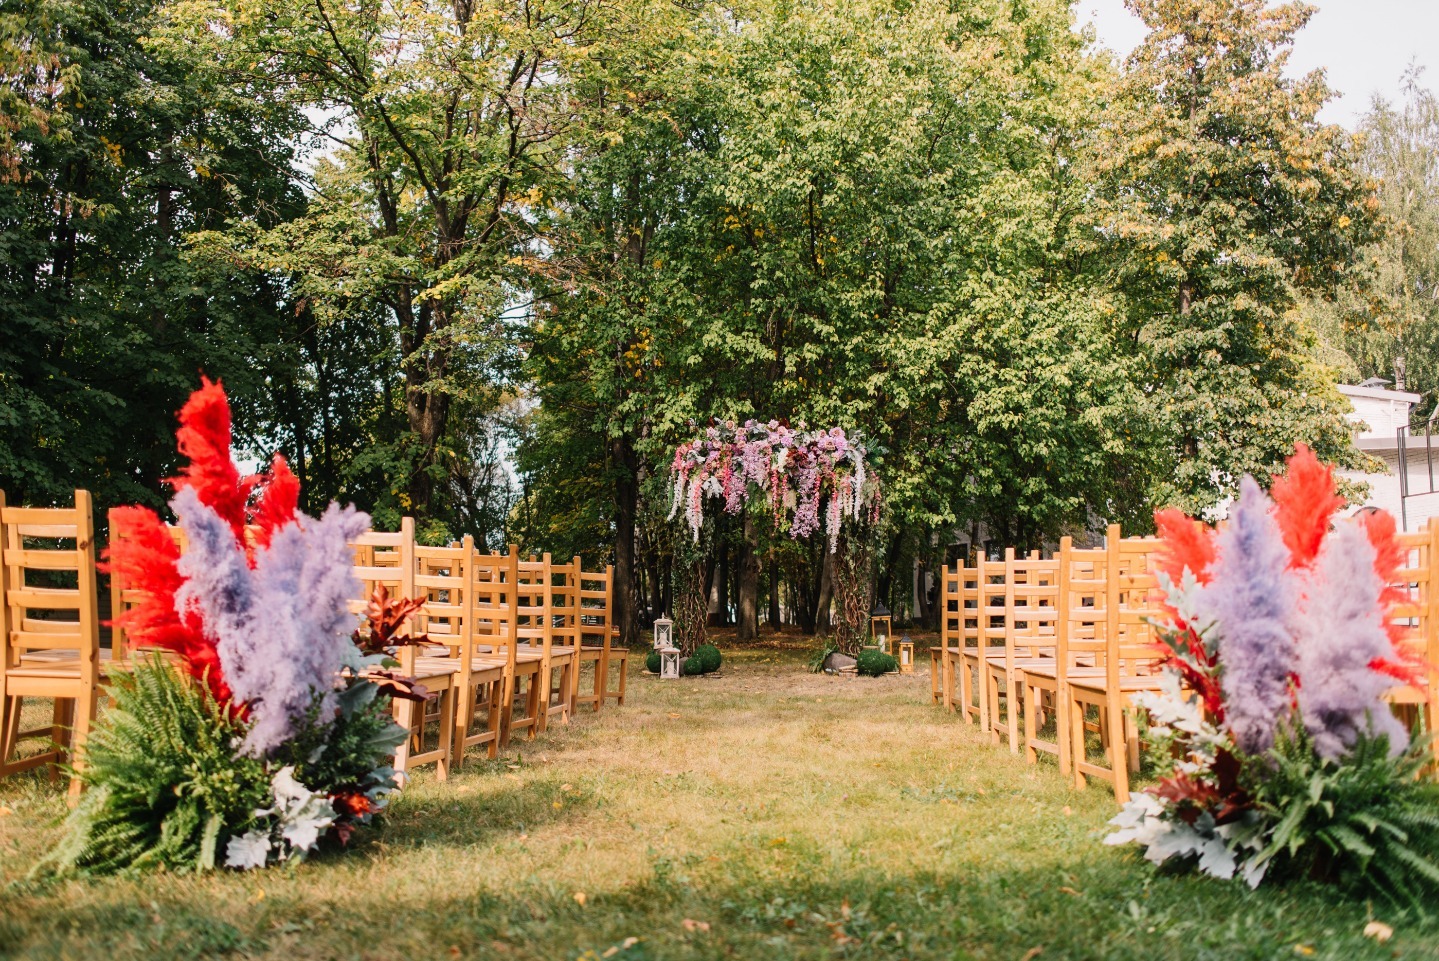 ФОТО ИЗ СТАТЬИ: В зачарованном лесу: волшебная свадьба как из сказки